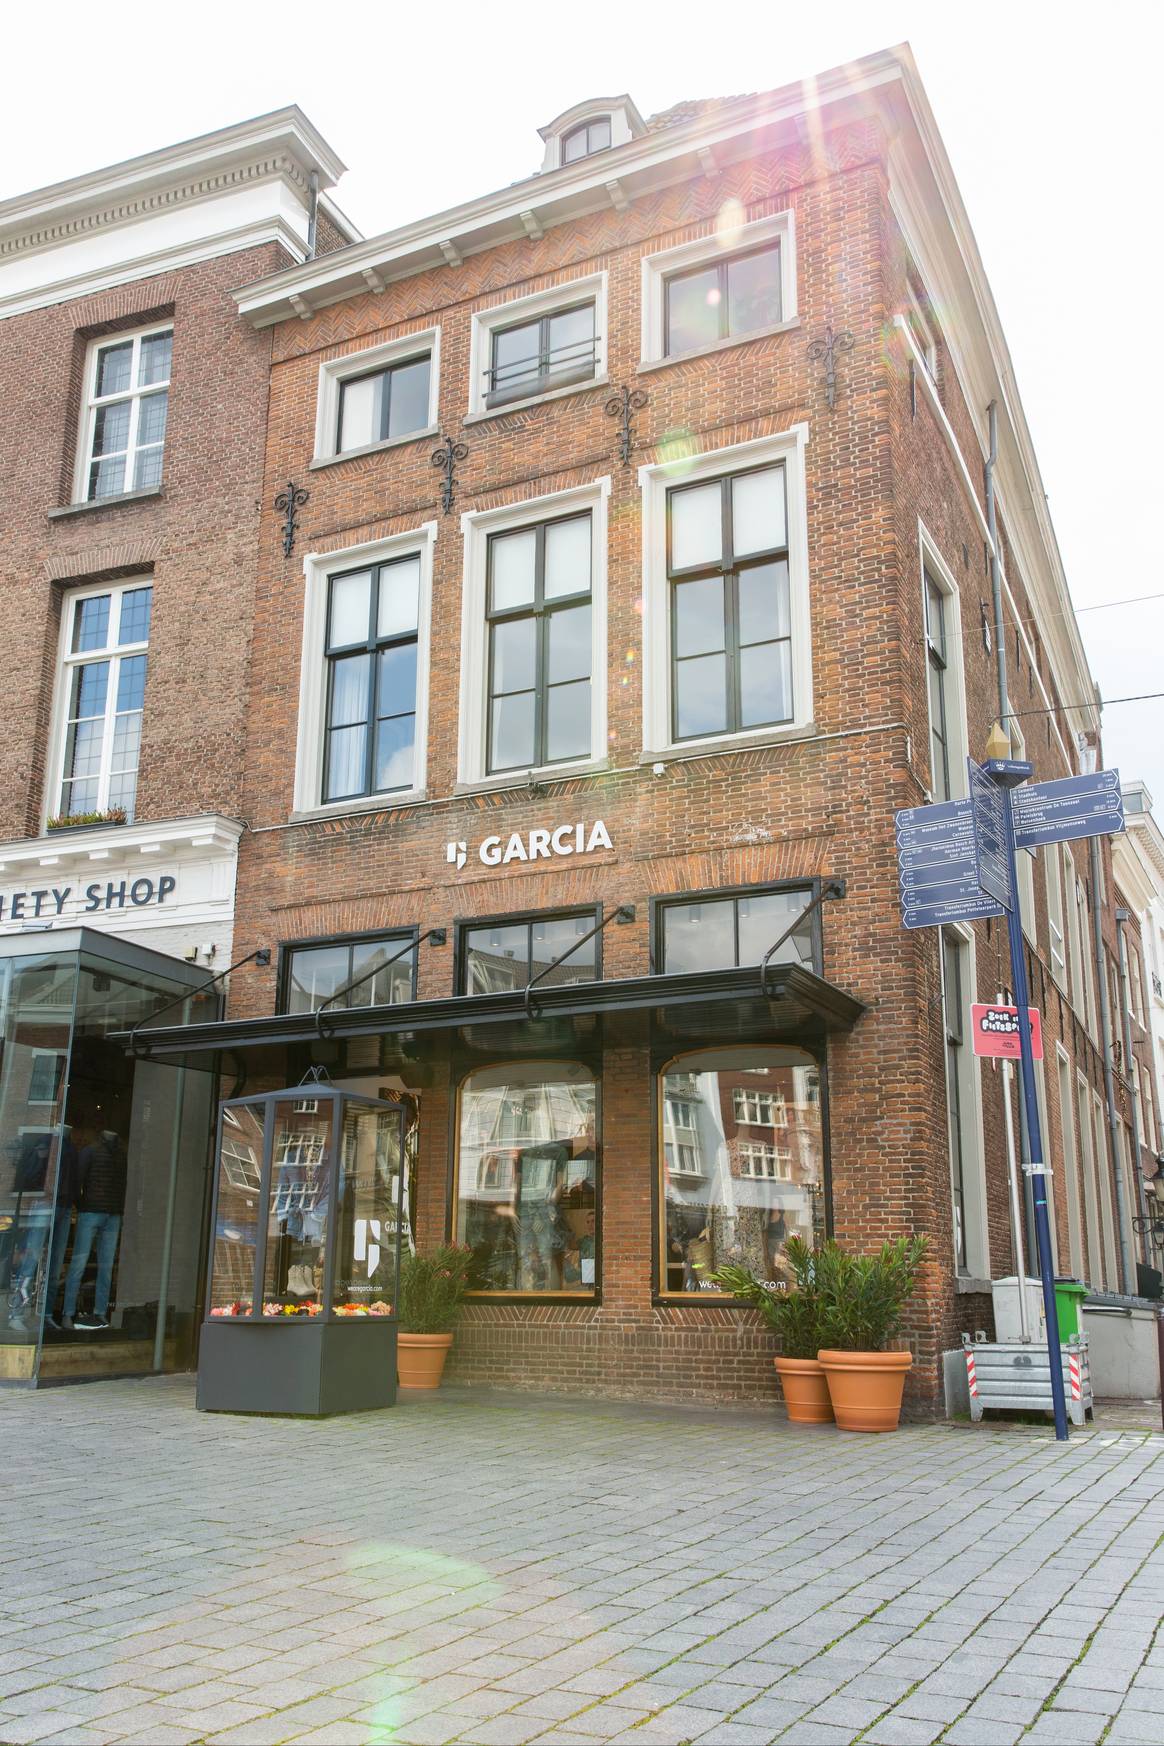 De Garcia-winkel op De Markt in Den Bosch. Beeld via Garcia